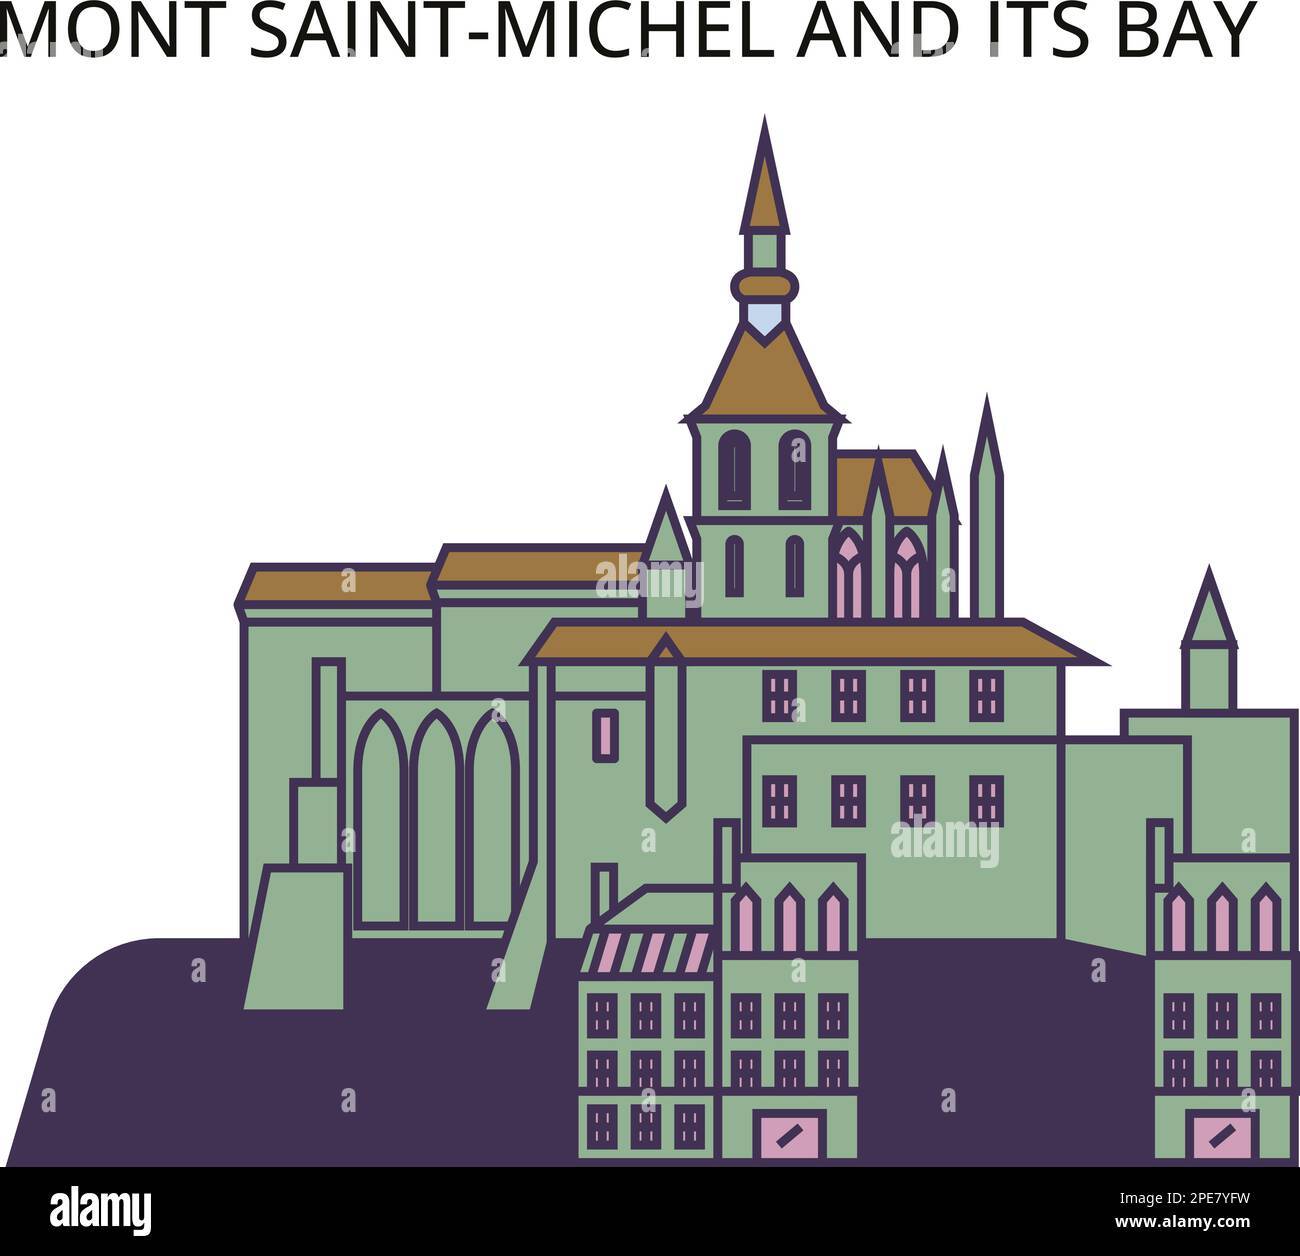 Frankreich, Mont Saint Michel und seine Bay Landmark Tourismus Wahrzeichen, Vector City Travel Illustration Stock Vektor